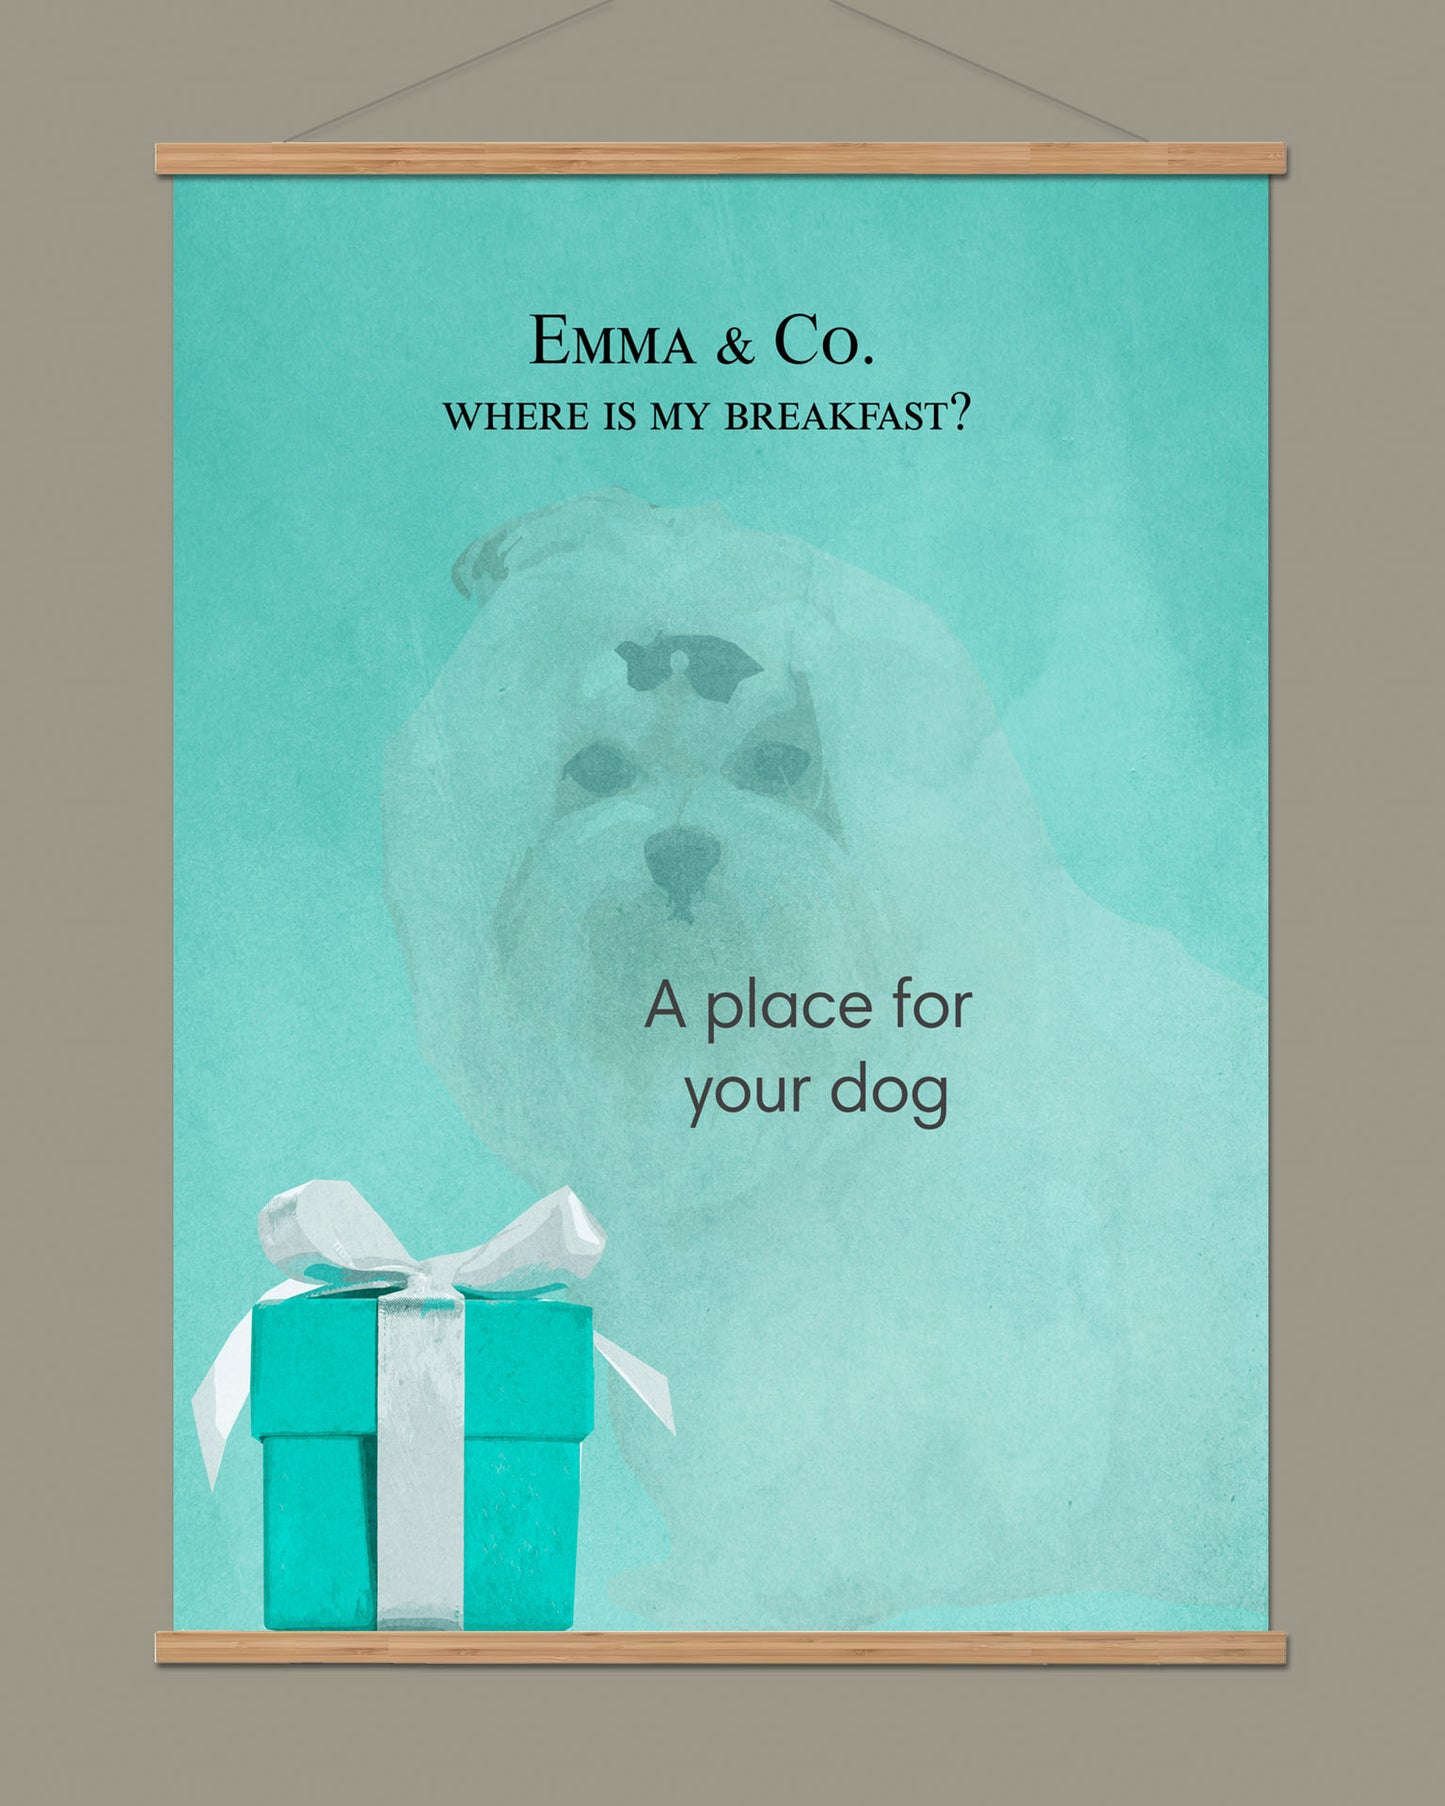 Customized dog poster "Emma & Co."